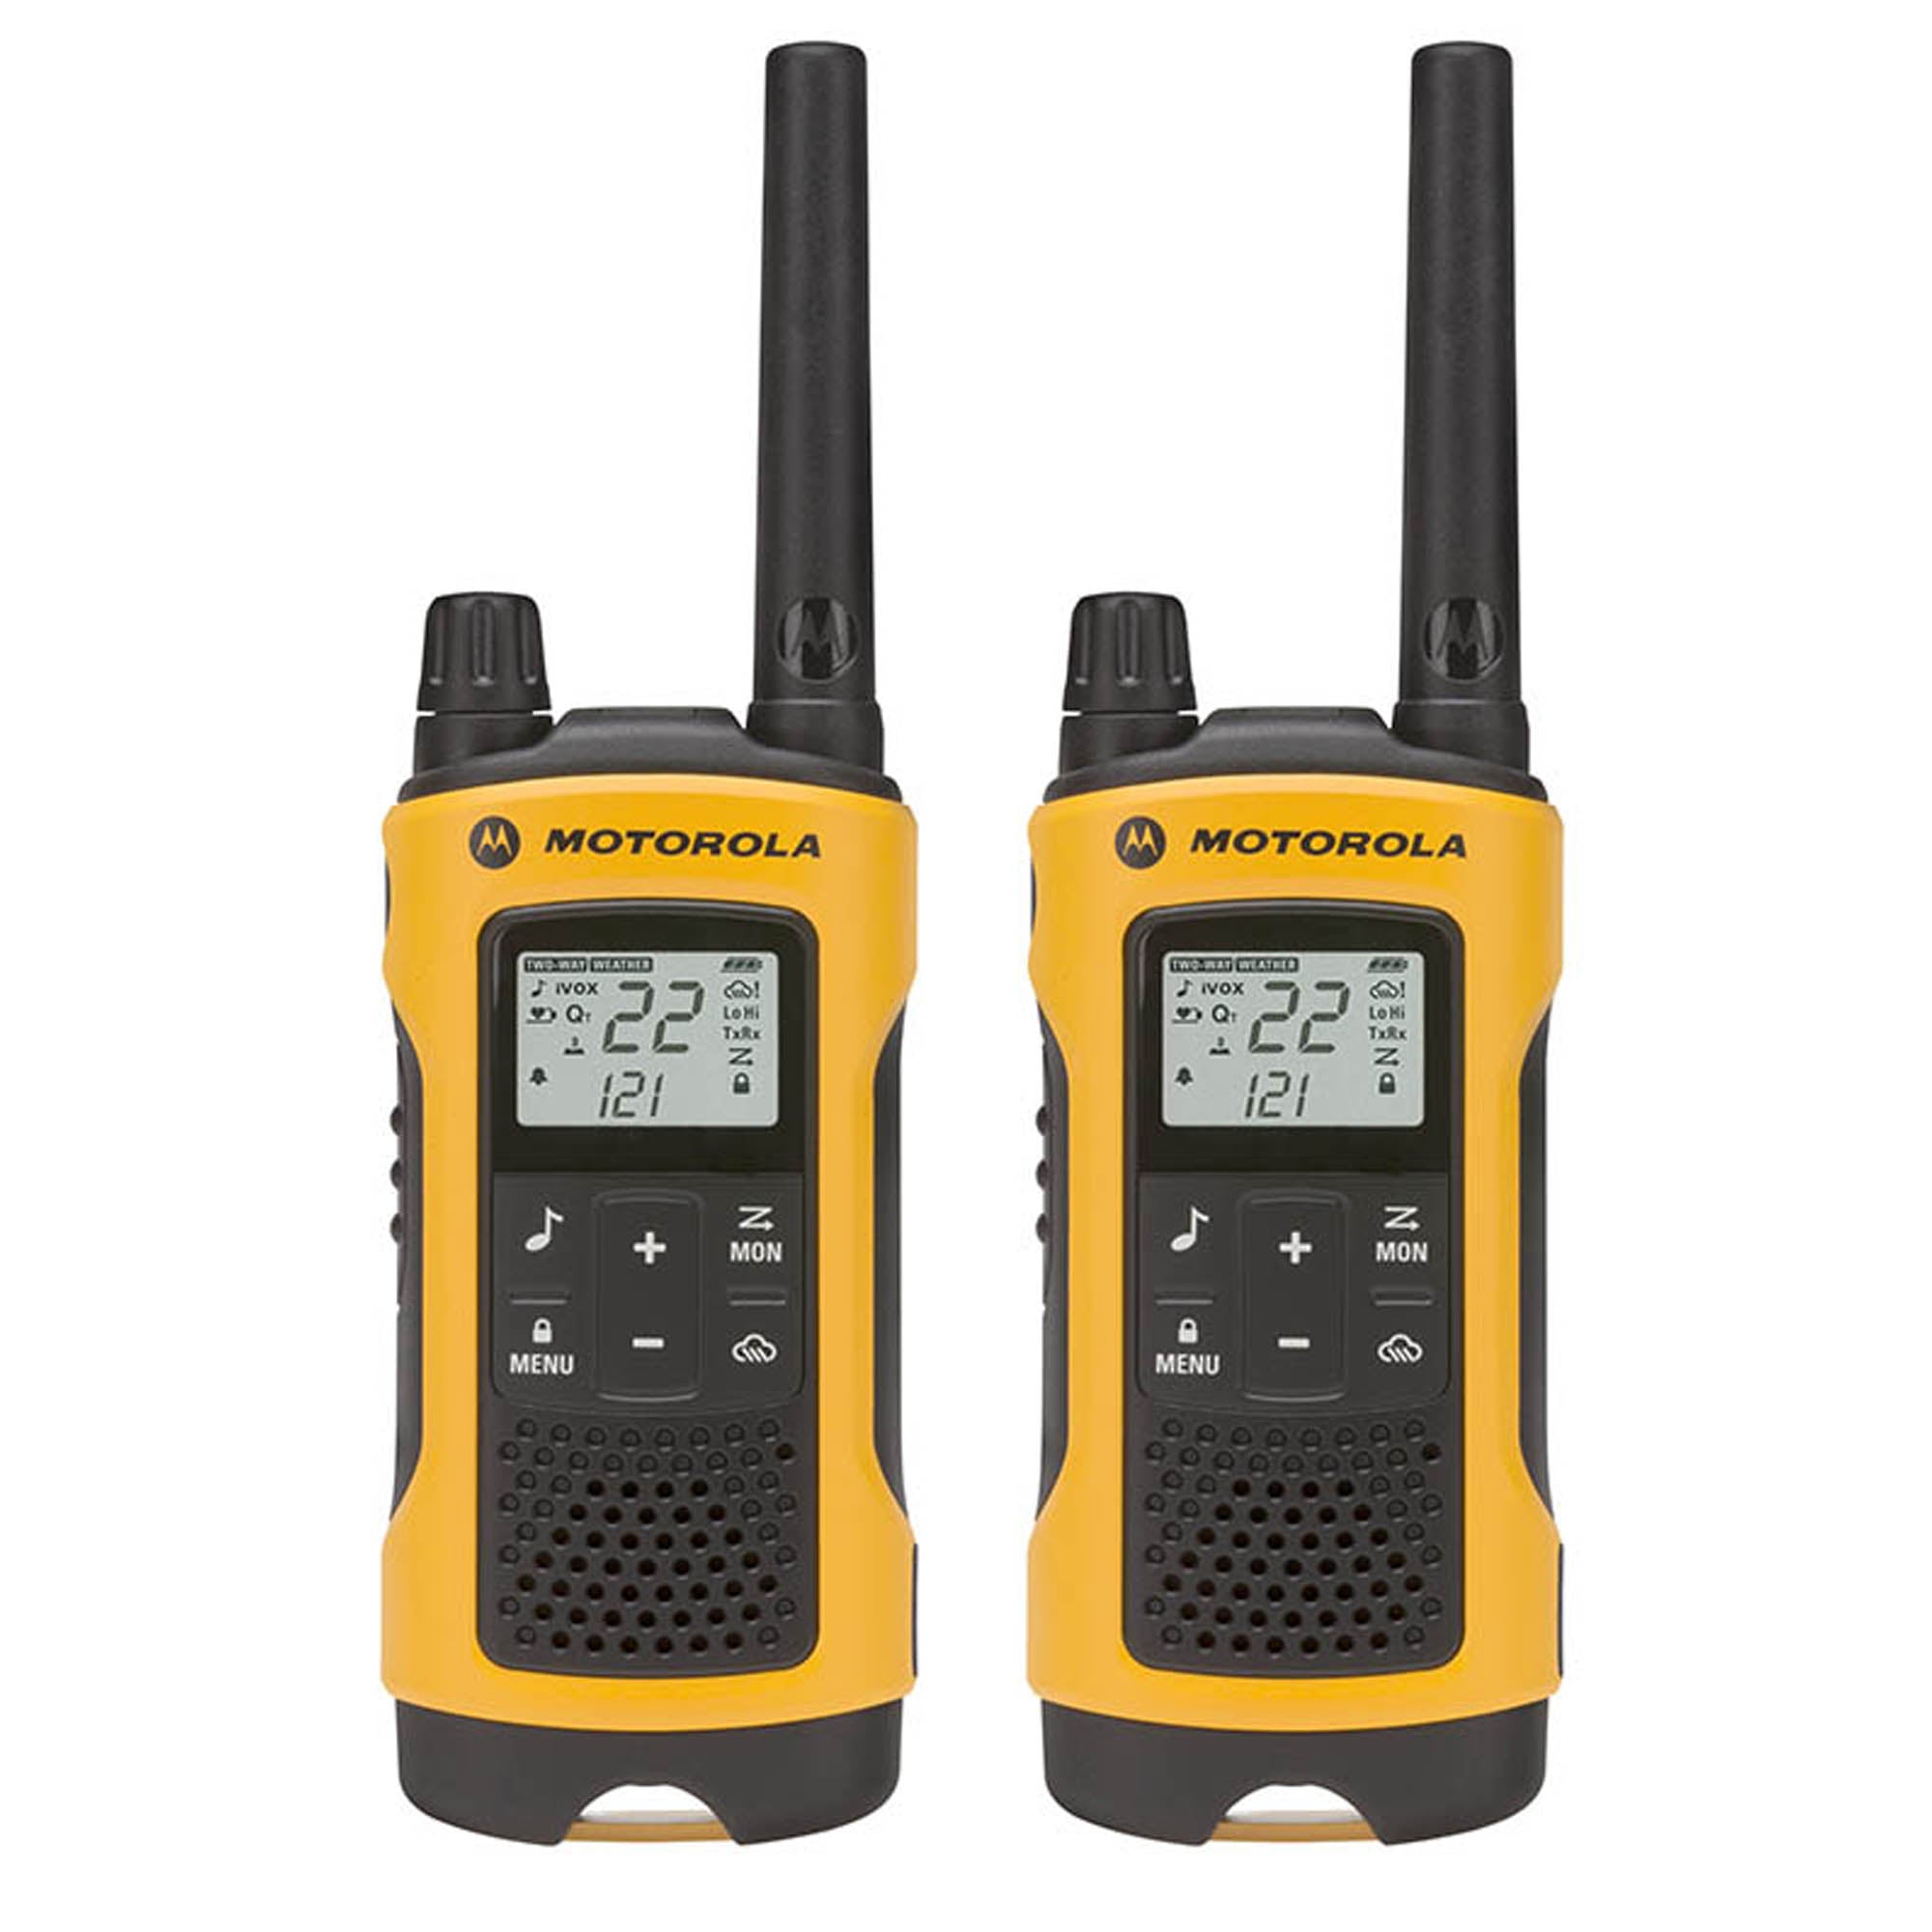 Pack of Motorola RDU4160d Two Way Radio Walkie Talkies - 1